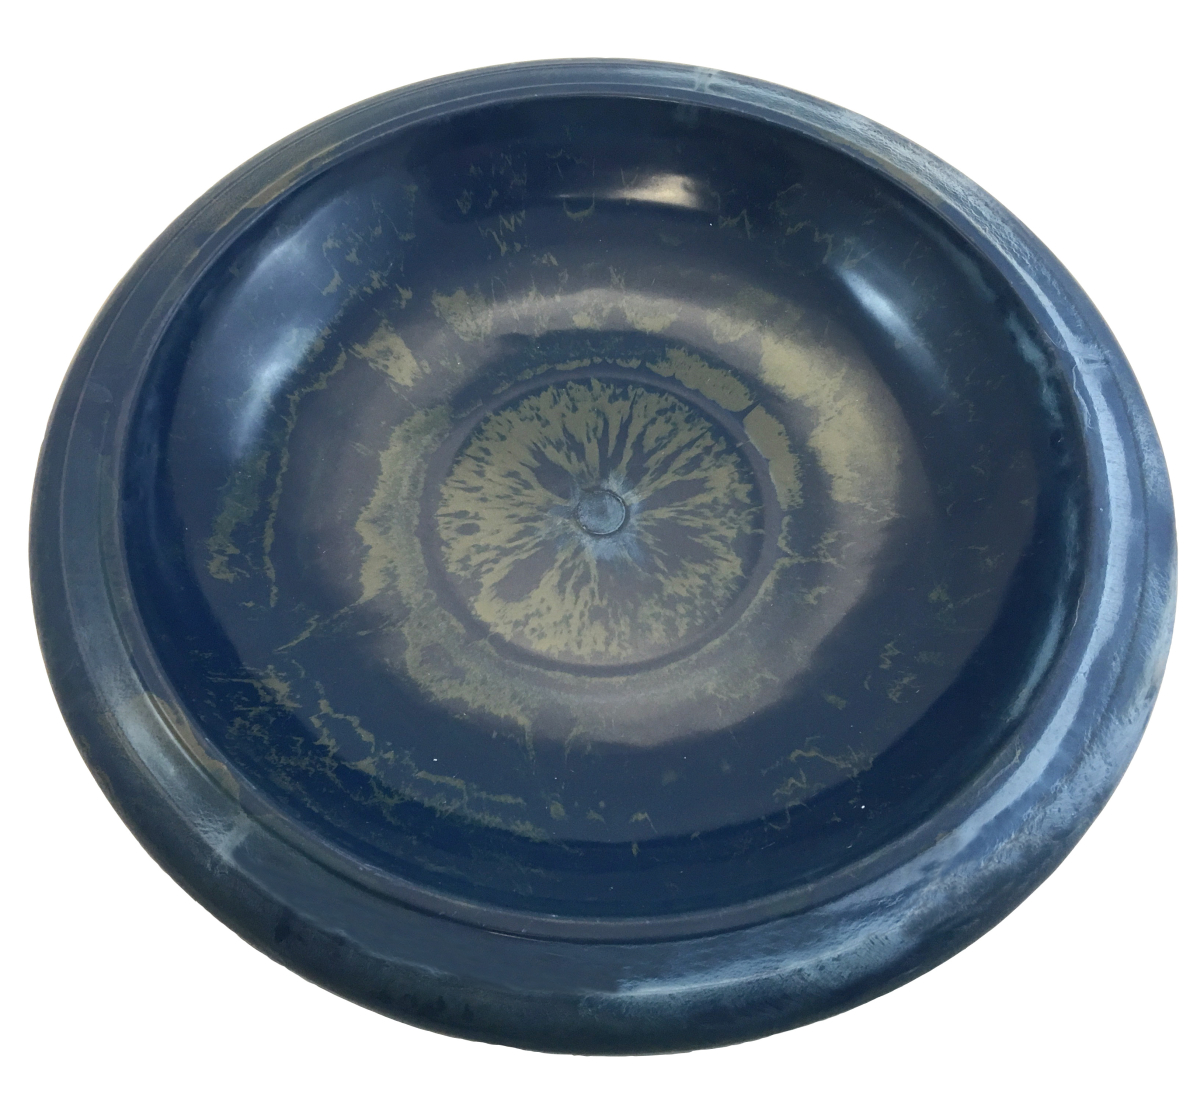 Tierra Navy Blue Gloss Bird Bowl w/Gloss Rim